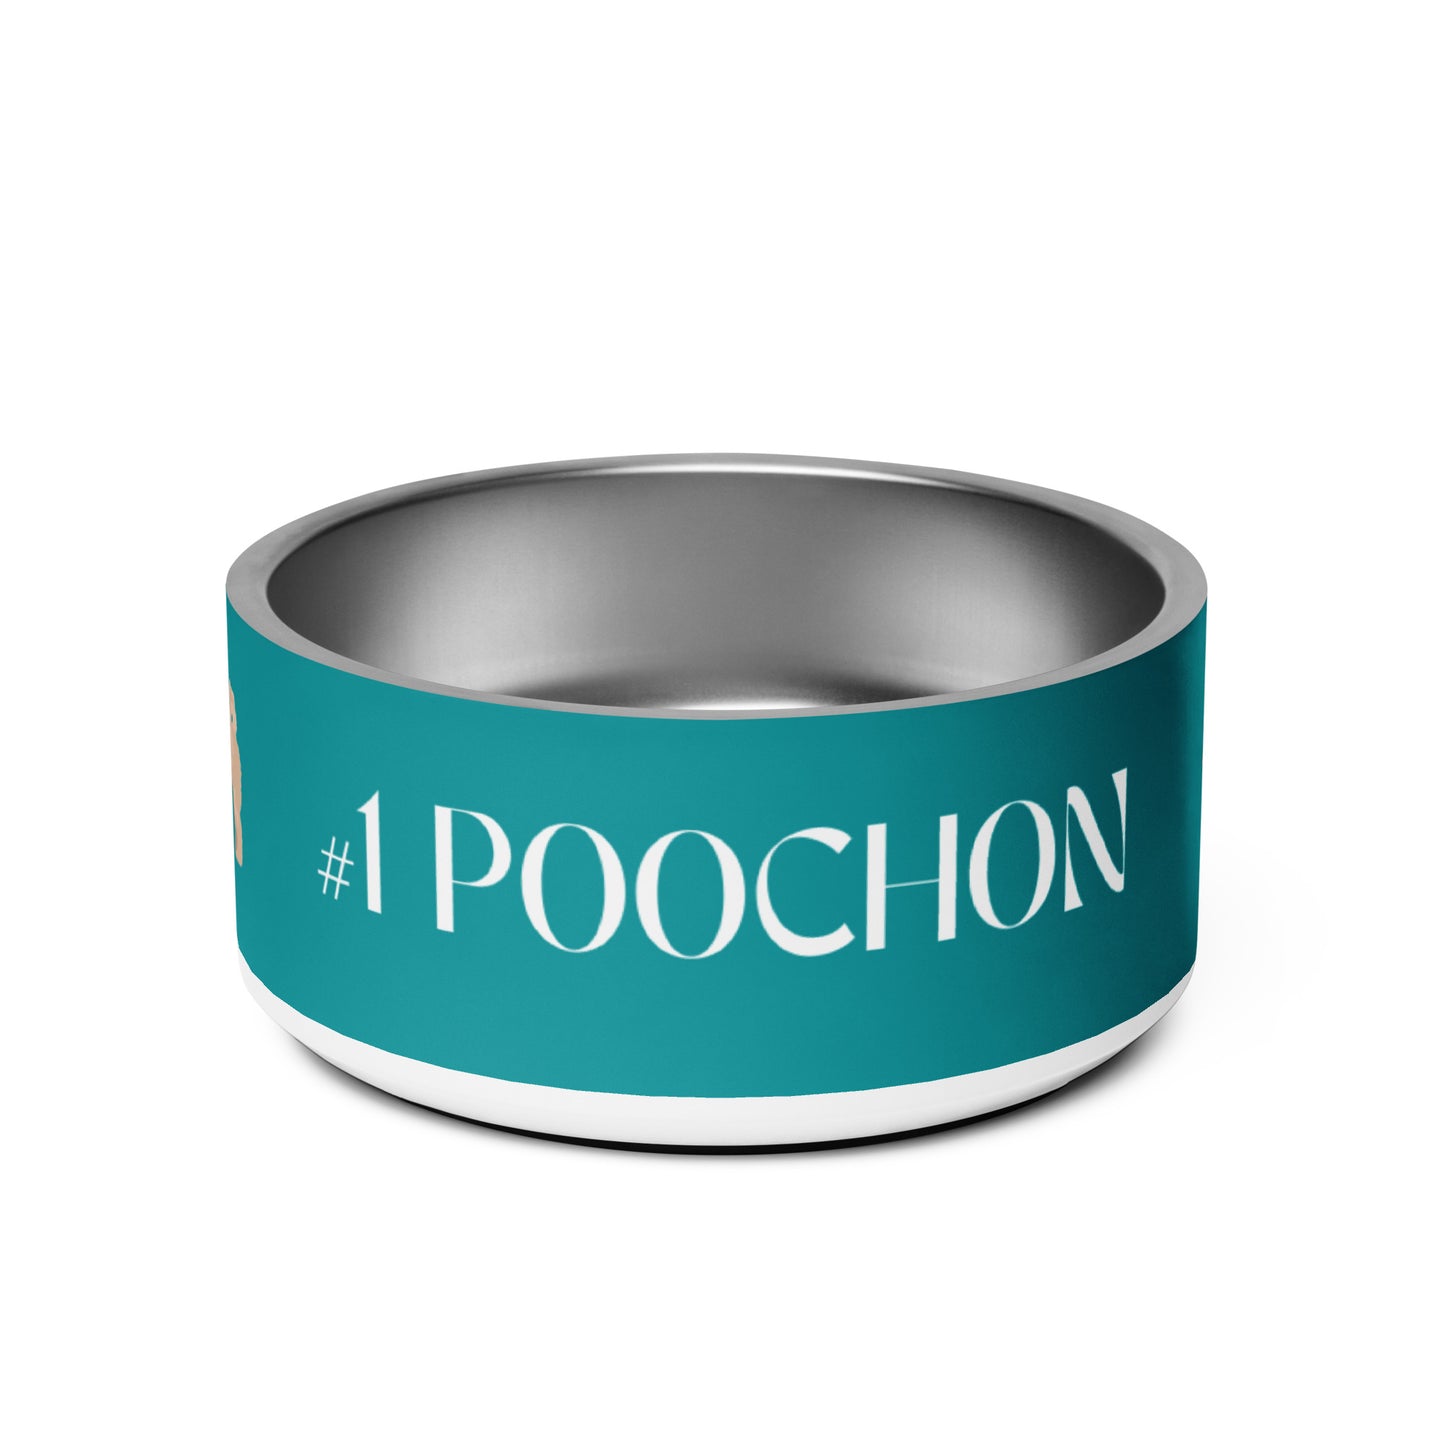 "Number 1 Poochon" Pet bowl